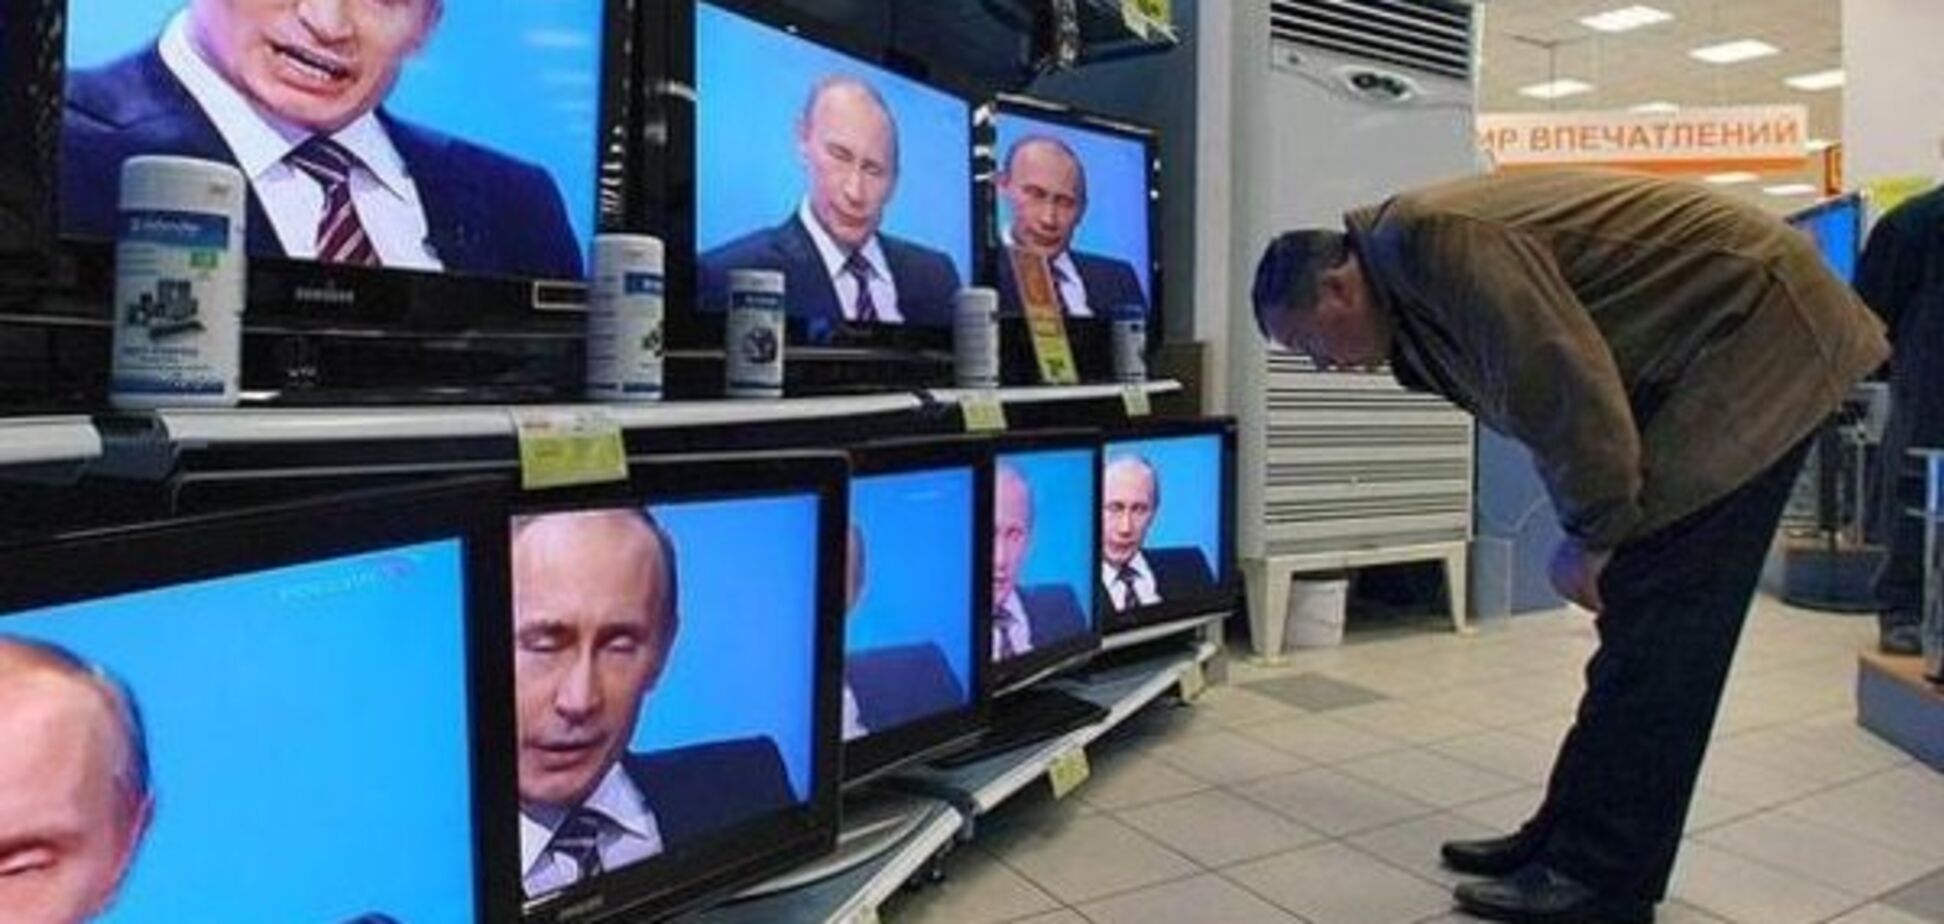 Россияне массово перестали верить новостям на ТВ - исследование